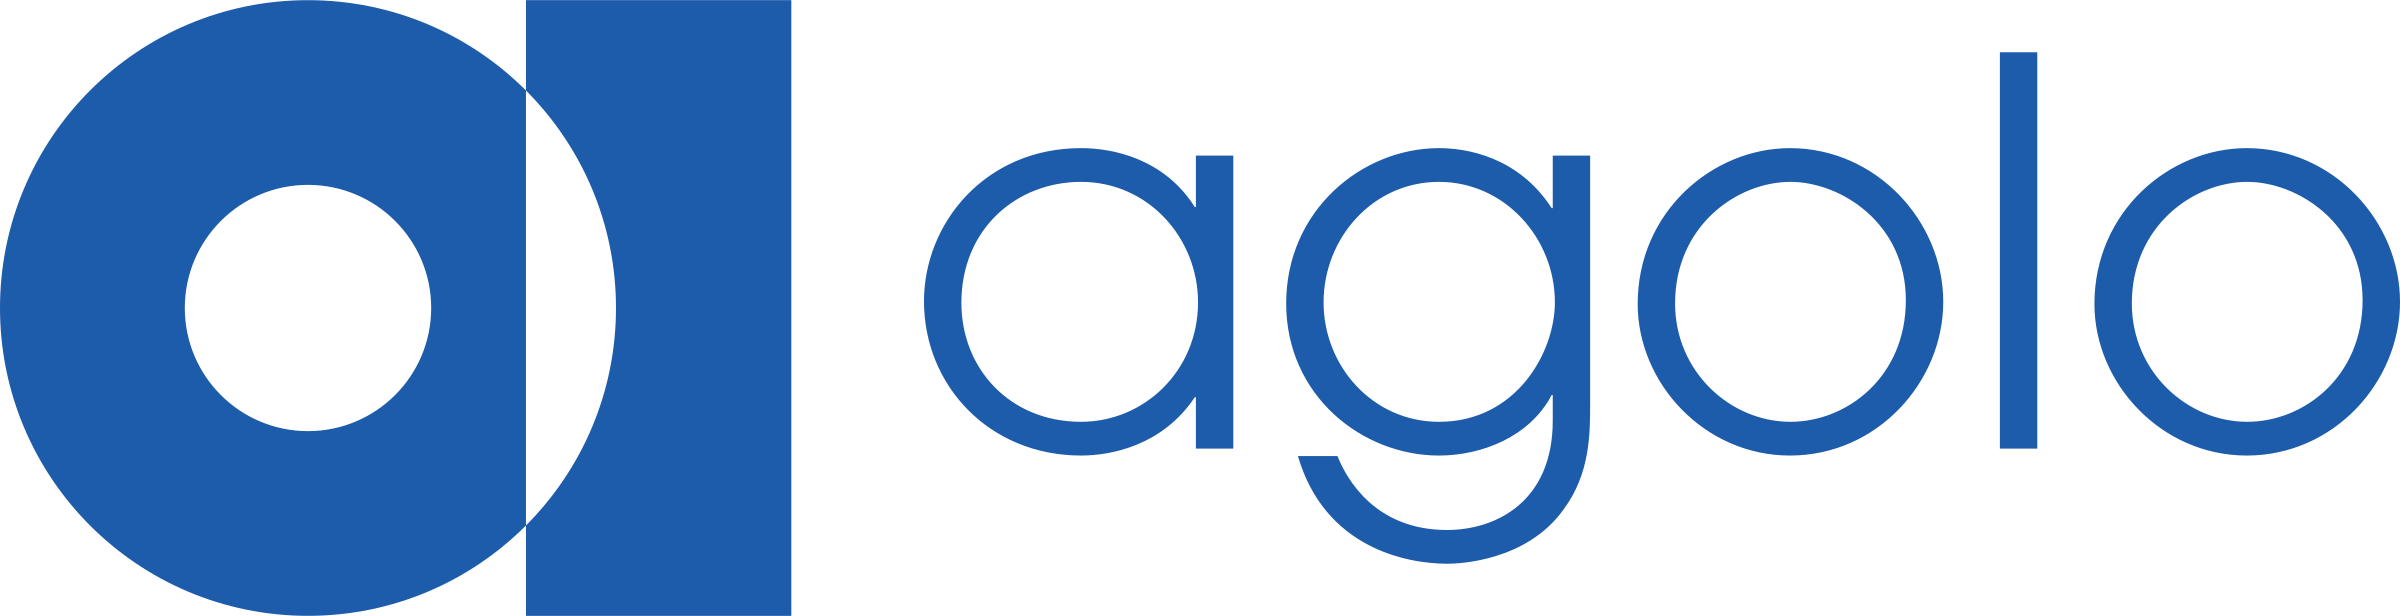 Agolo logo